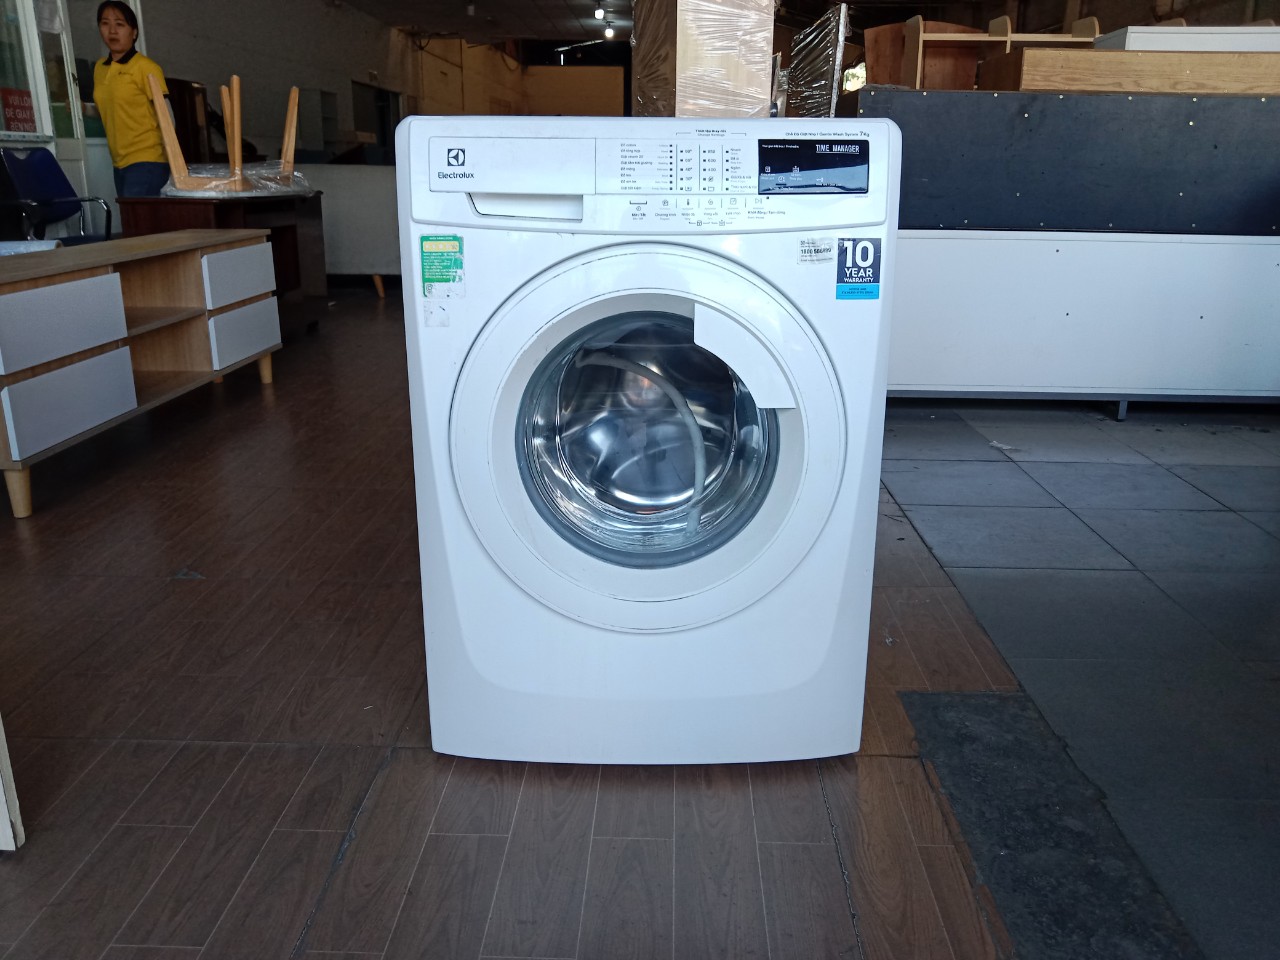 Lỗi e20 máy giặt electrolux tìm hiểu nguyên nhân và cách khắc phục triệt để